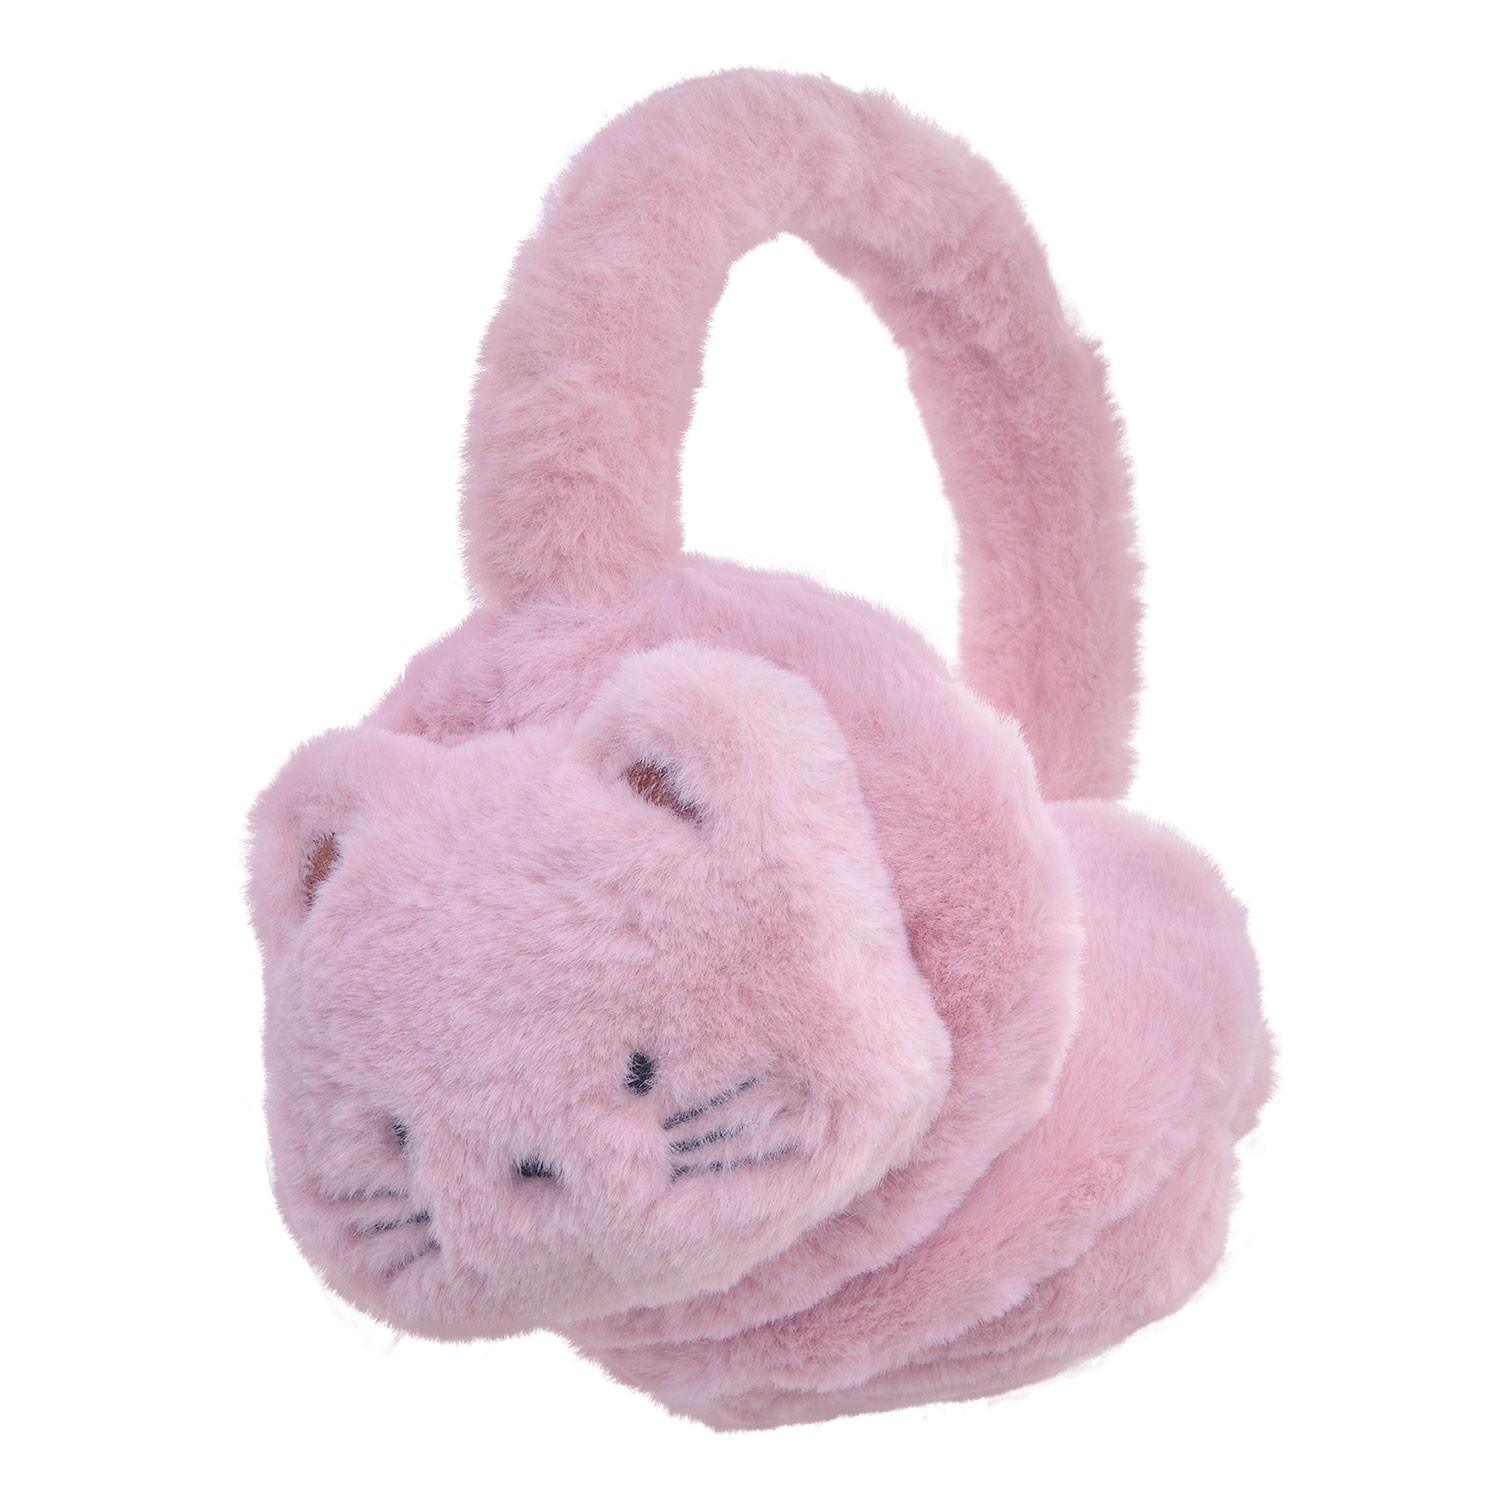 Růžové klapky na uši s kočičkou - 13 cm MLLLEW0013P